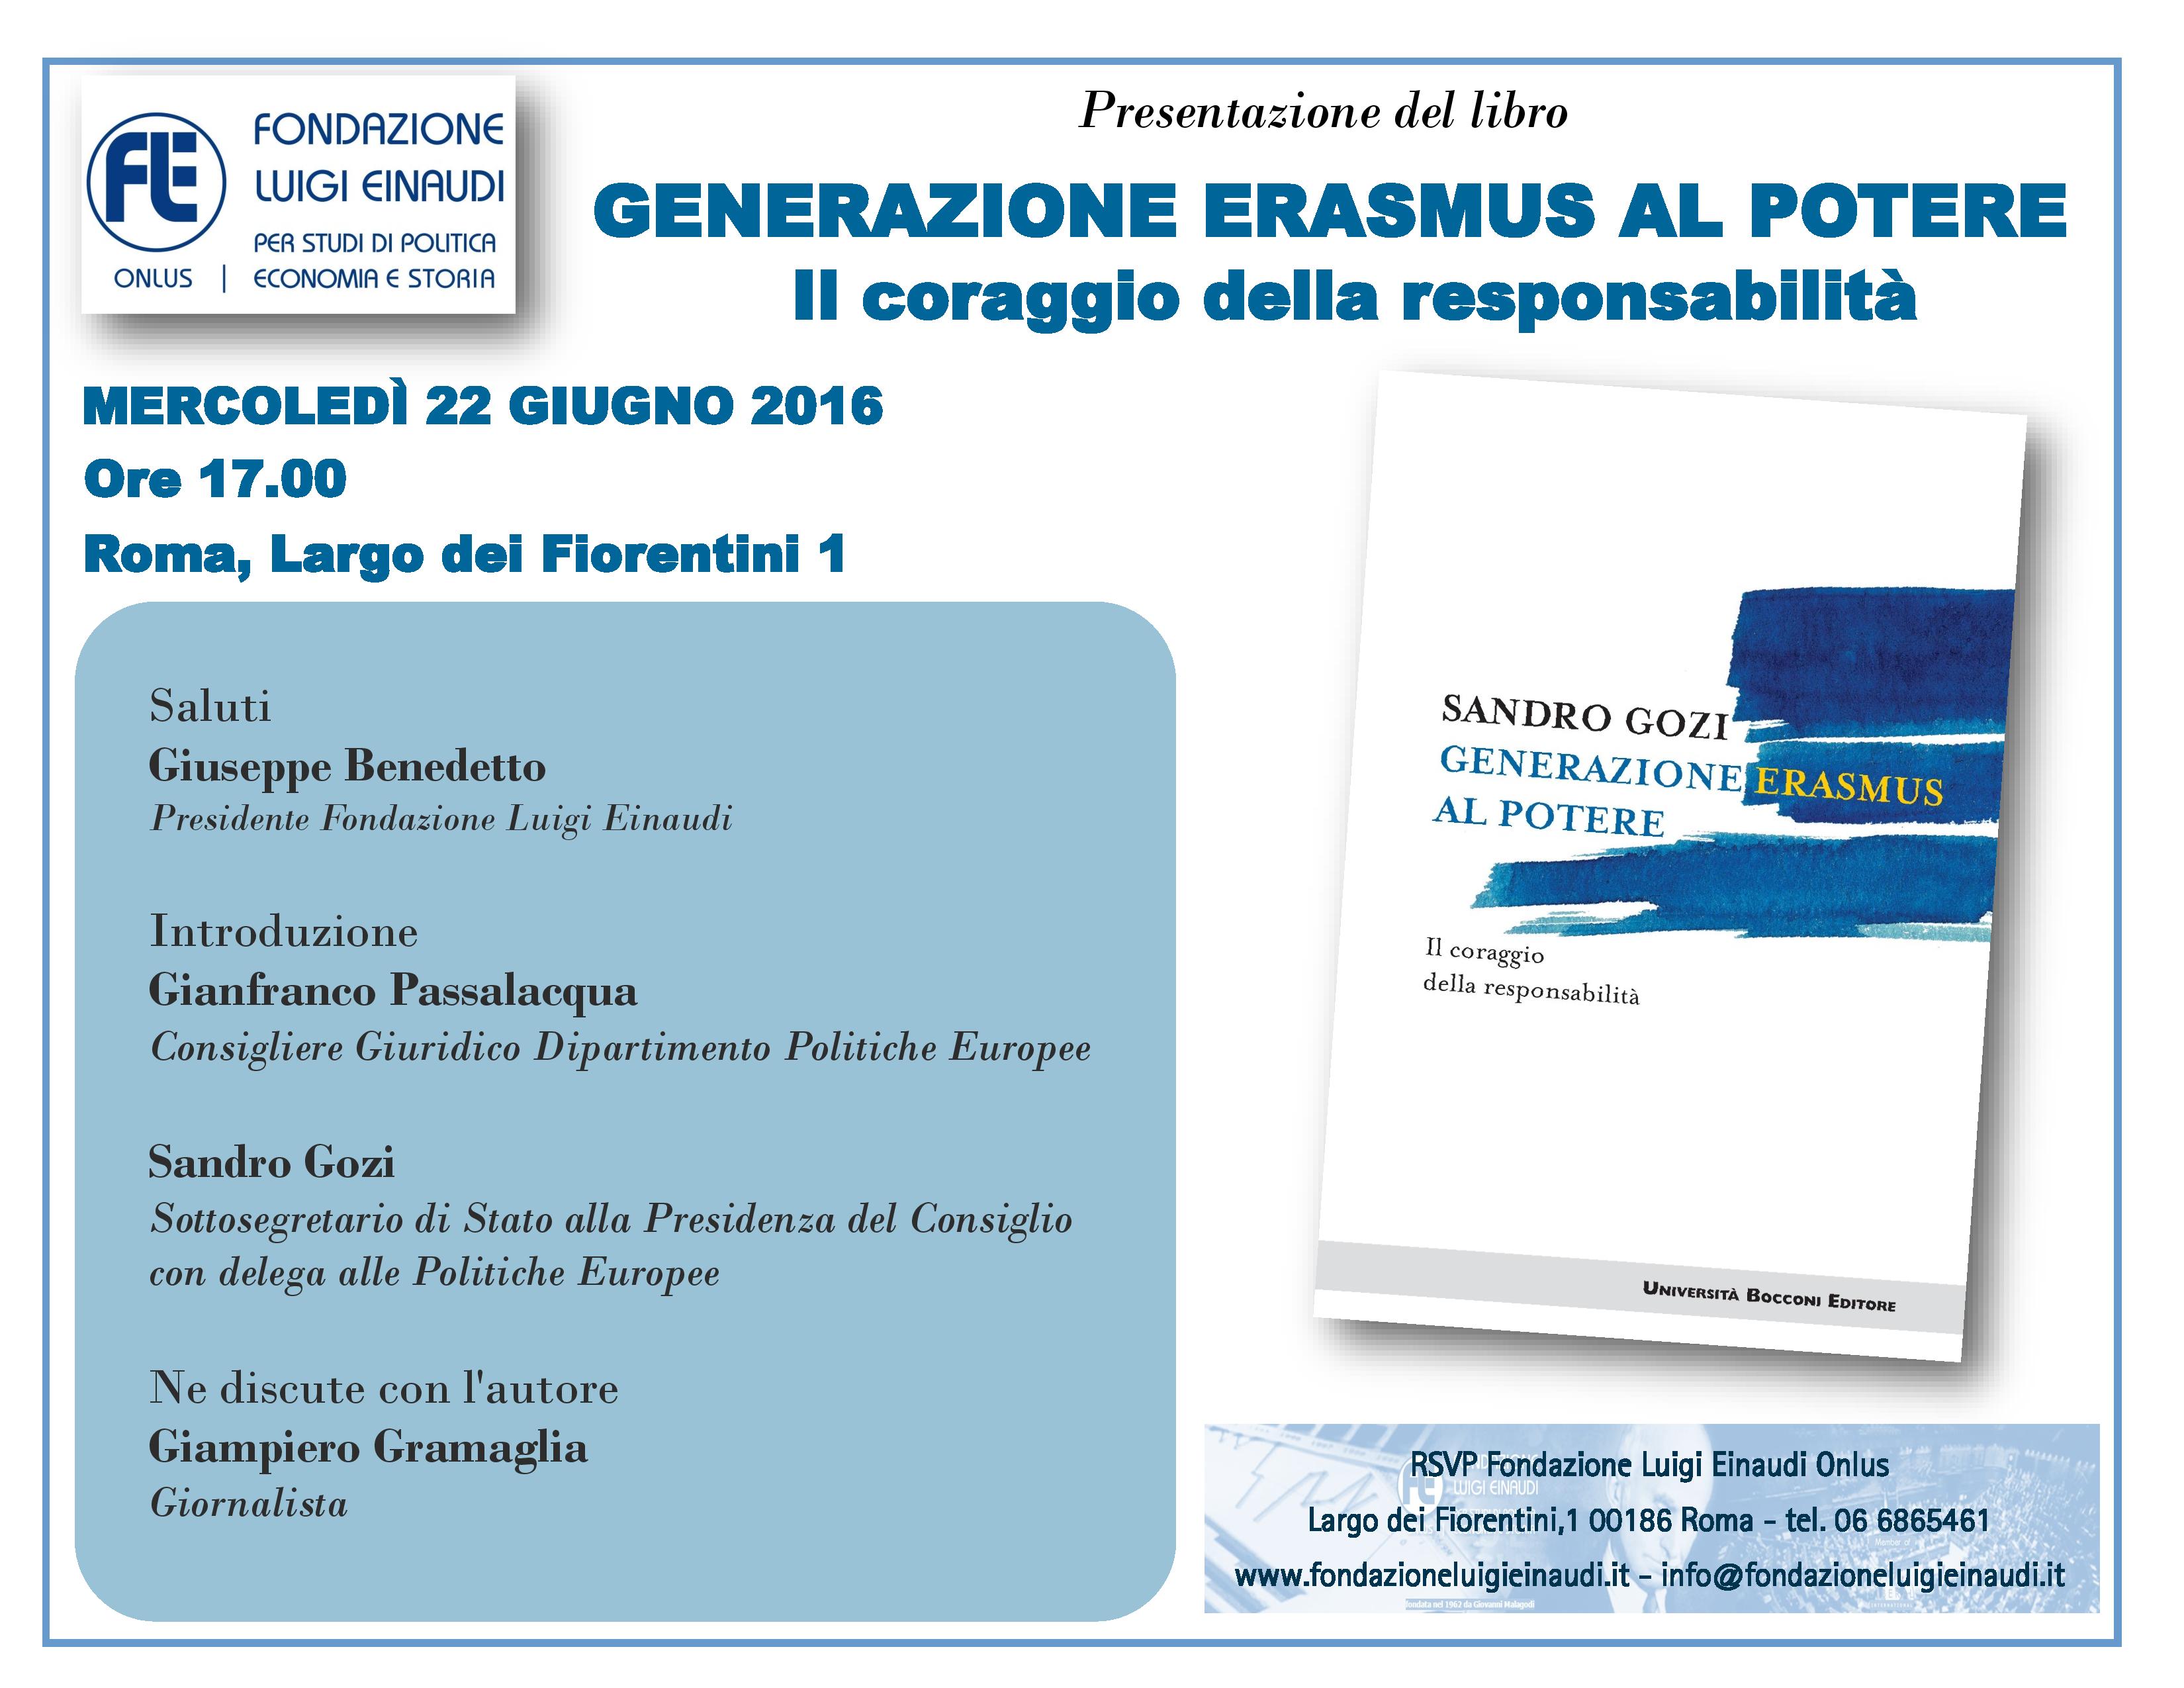 Presentazione del libro “Generazione Erasmus al potere” di Sandro Gozi